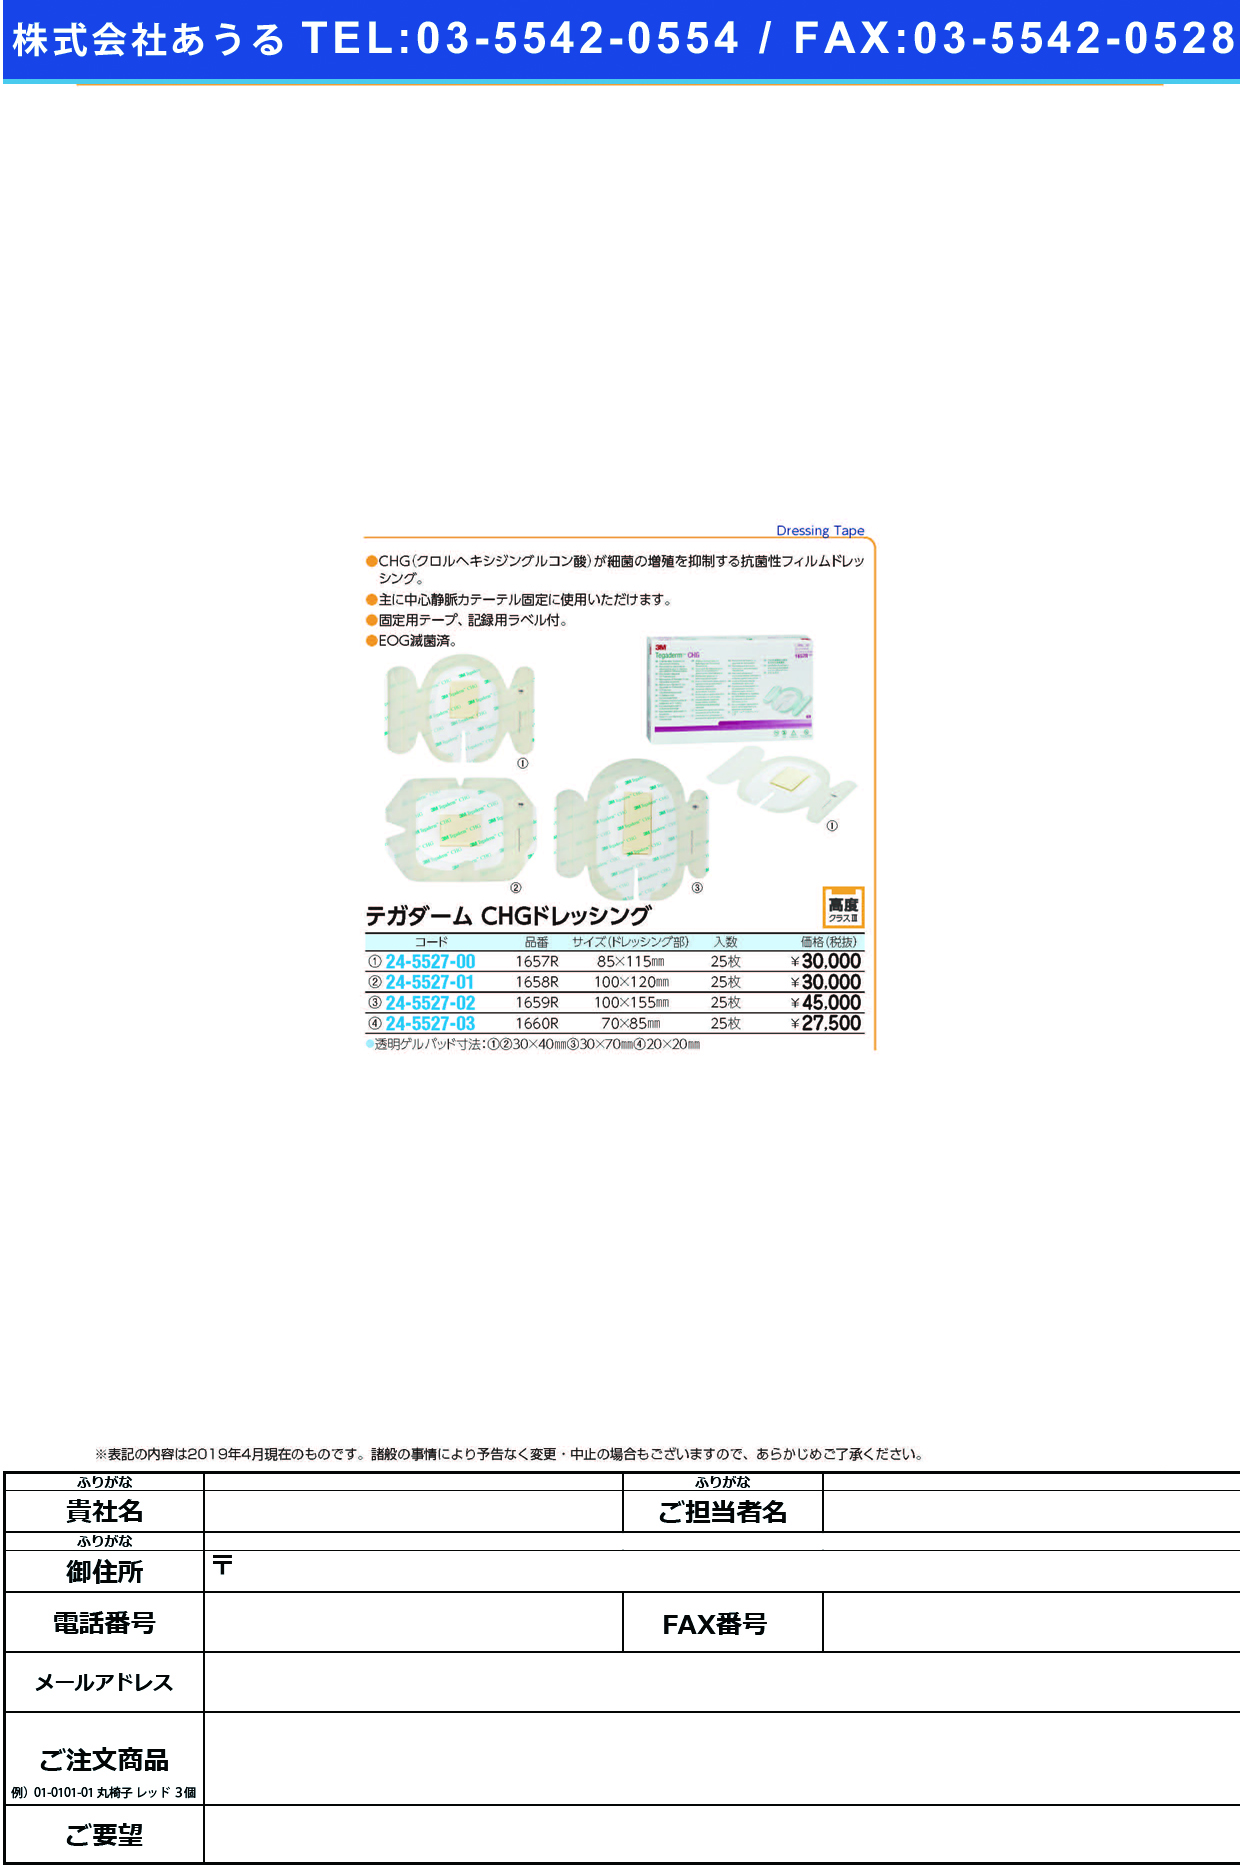 テガダームＣＨＧドレッシング 1660R(7X8.5CM)25ﾏｲ ﾃｶﾞﾀﾞｰﾑCHGﾄﾞﾚｯｼﾝｸﾞ(スリーエムジャパンヘルスケアカンパニー)